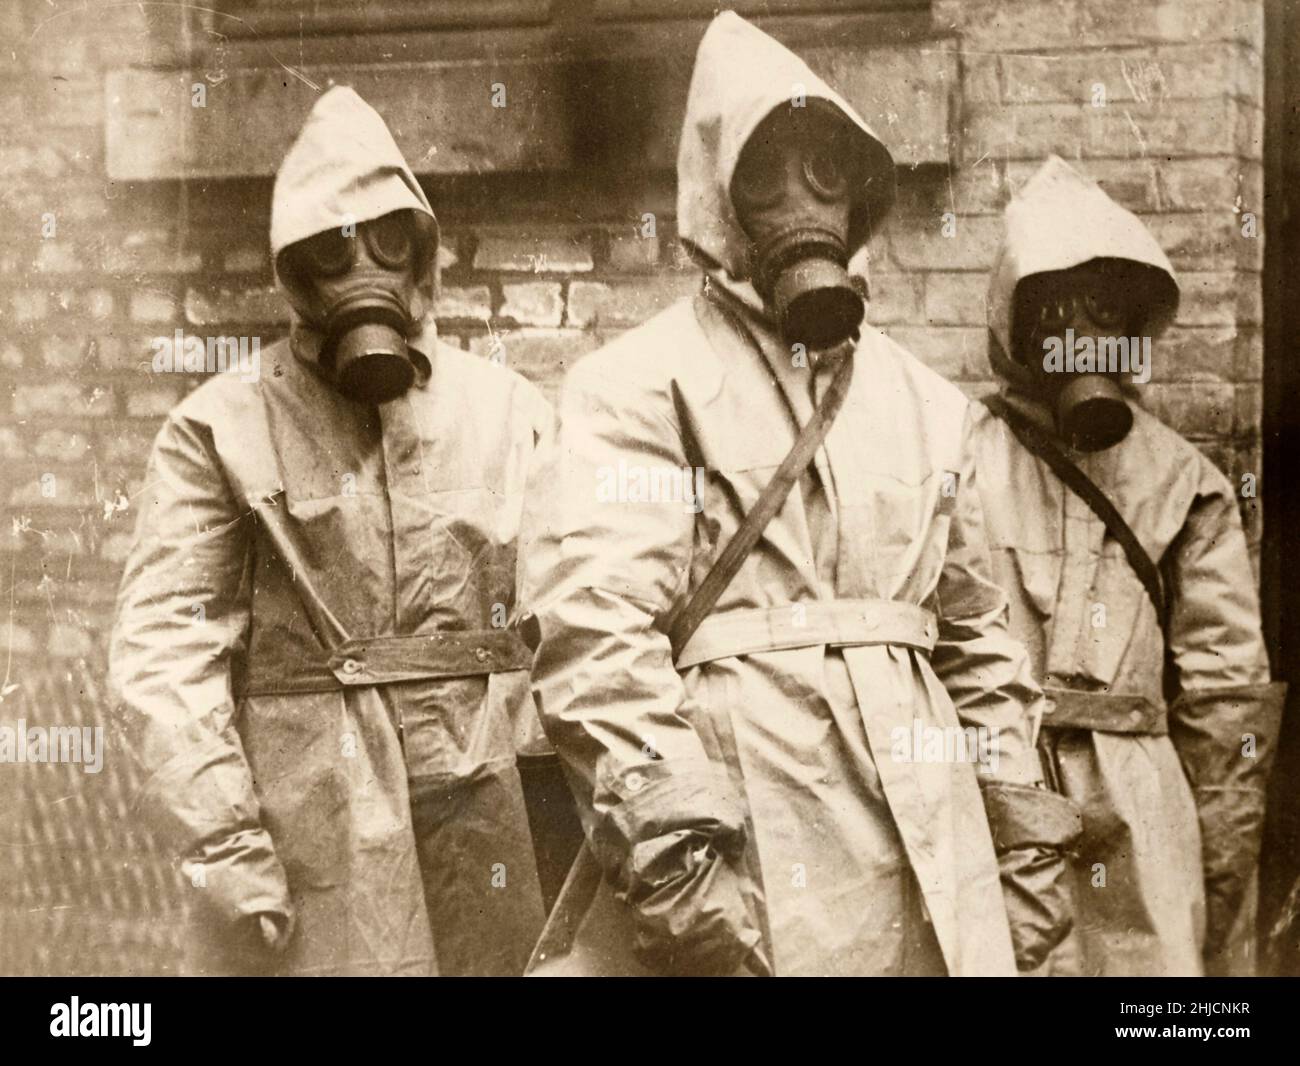 Tre chirurghi dell'esercito francese che indossano maschere a gas nel corso dei loro doveri medici, la prima guerra mondiale. Circa 1917-18. Foto Stock